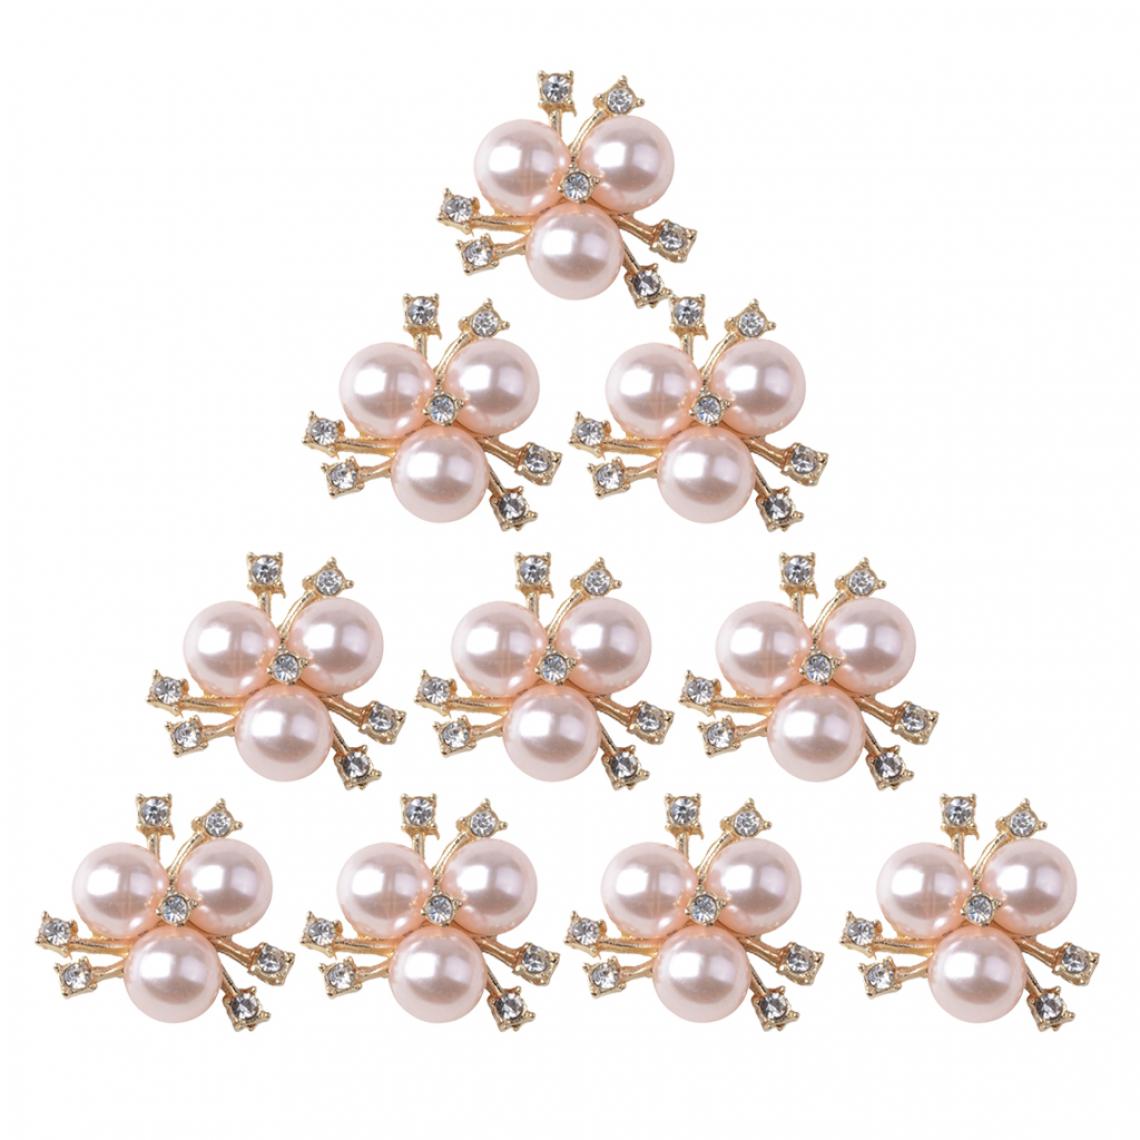 marque generique - 10 Lot de Strass Diamante Alliage Embellissements de Perles Boutons Flatback Decor - Poignée de meuble